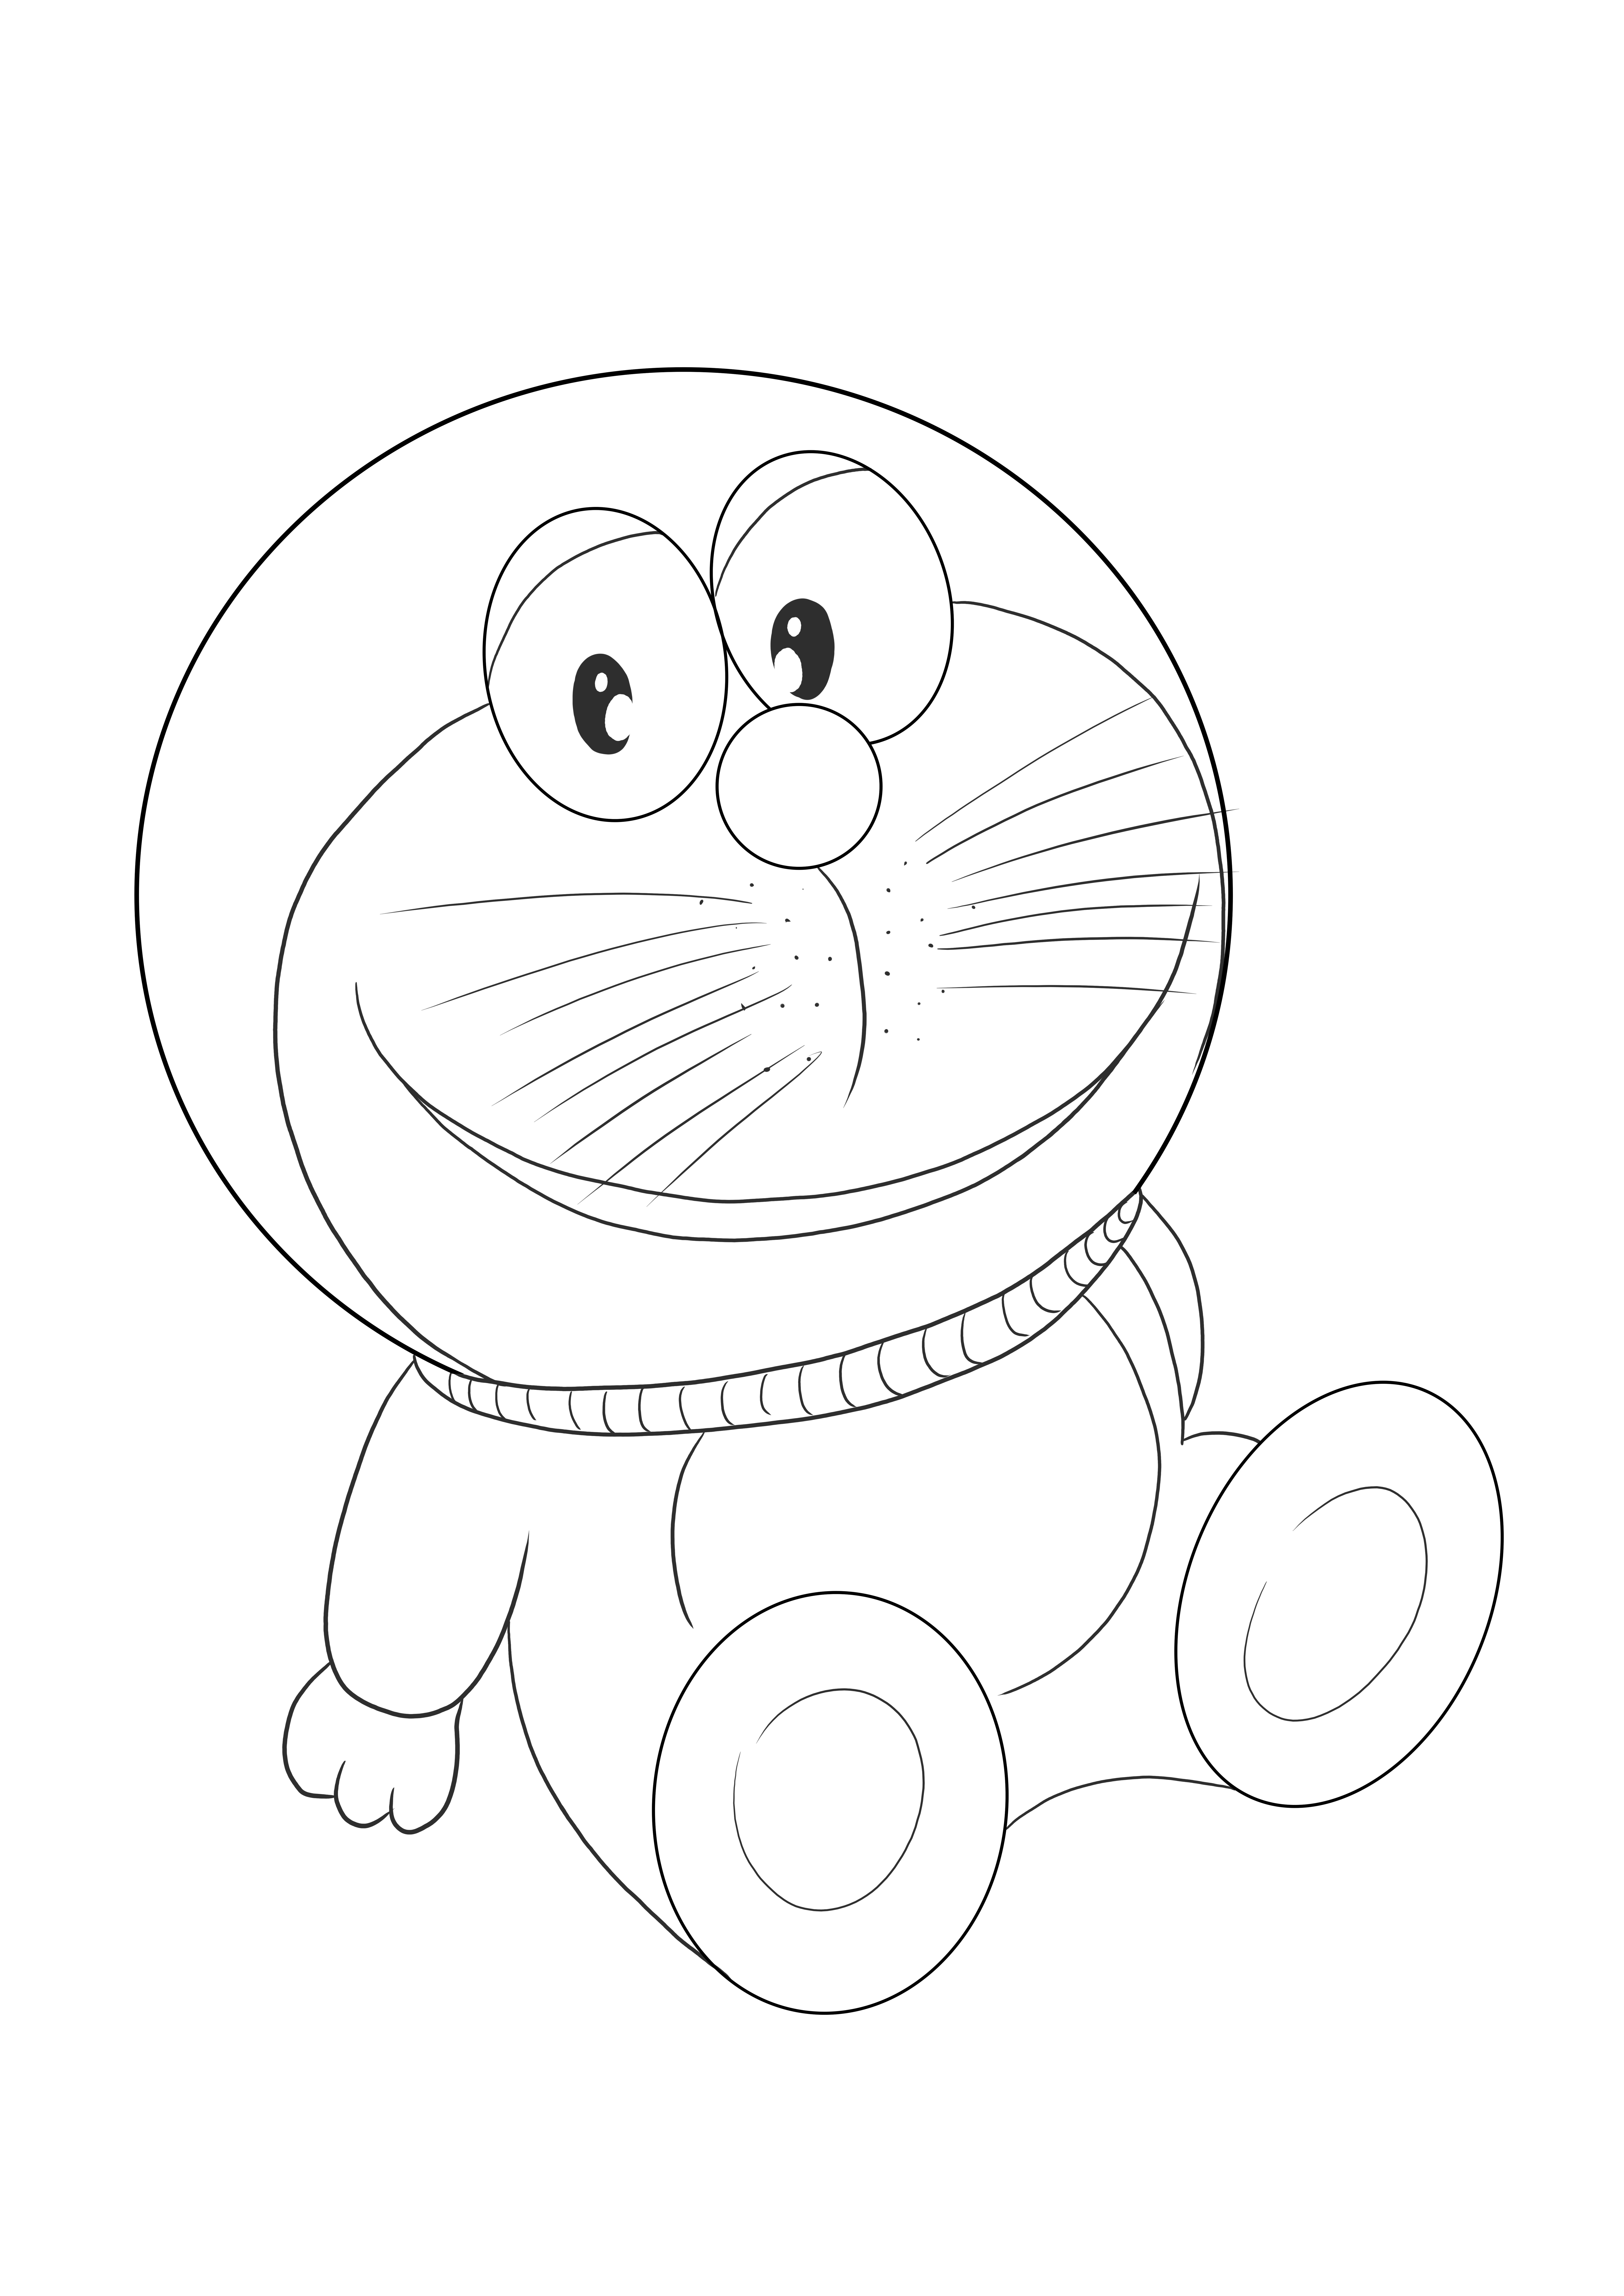 Doraemon gambar yang dapat dicetak gratis untuk diwarnai untuk anak-anak